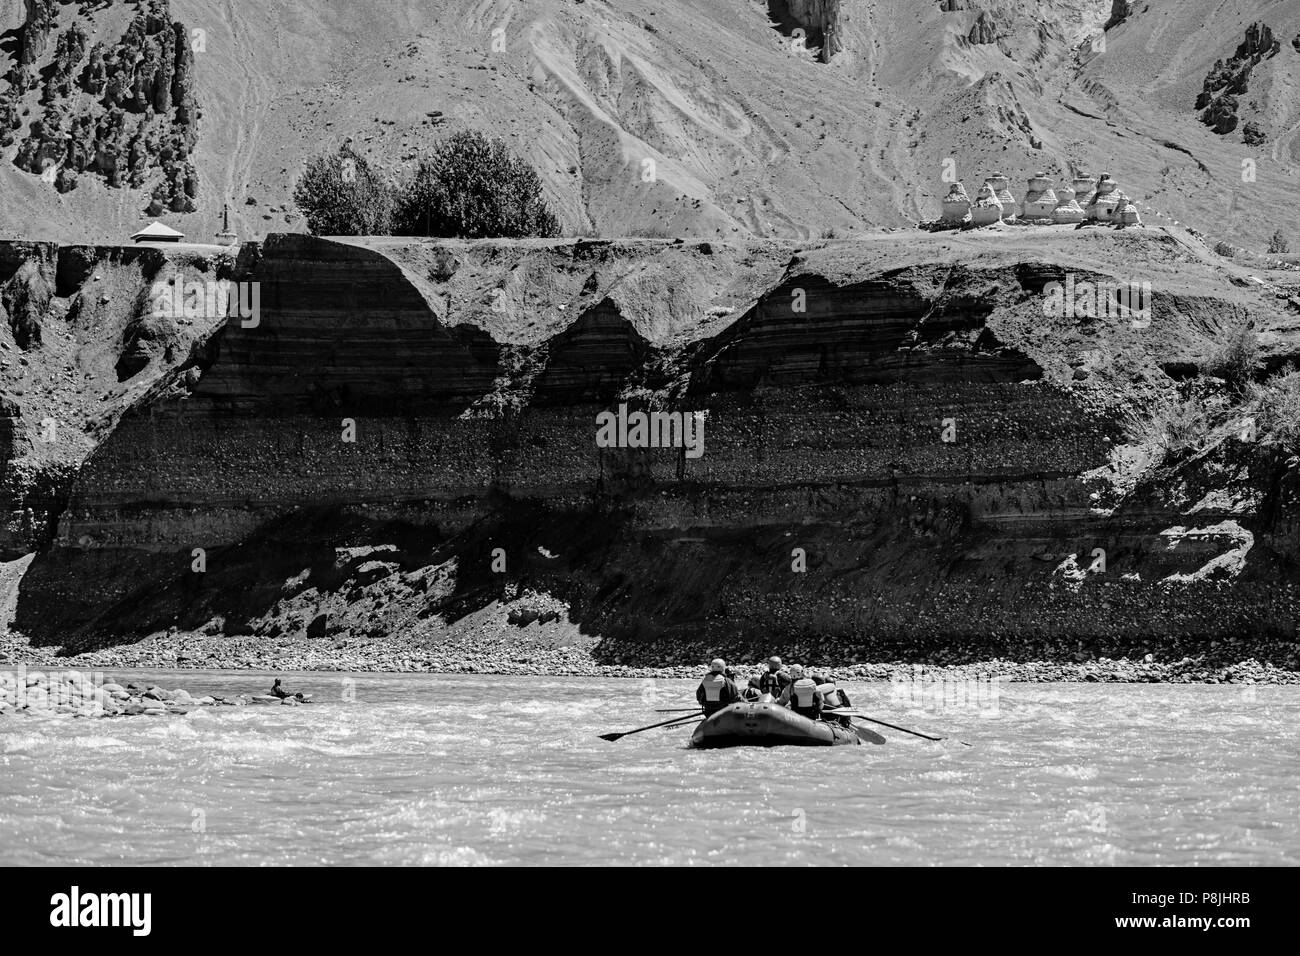 River Rafters unter buddhistischen STUPAS am Ufer der STOD FLUSS - Zanskar, Ladakh, Indien Stockfoto